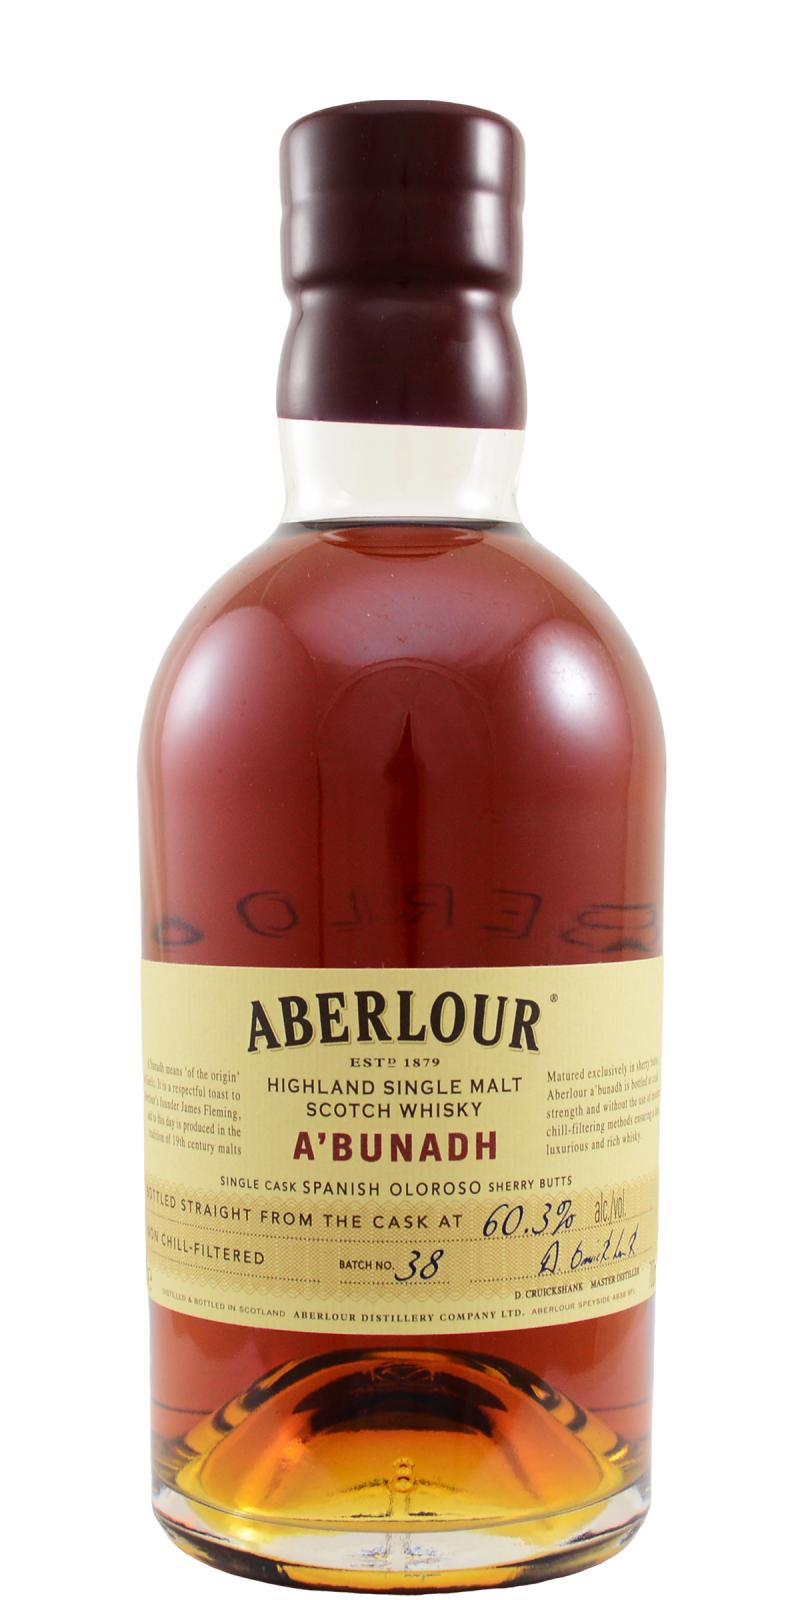 Aberlour A'bunadh batch #38